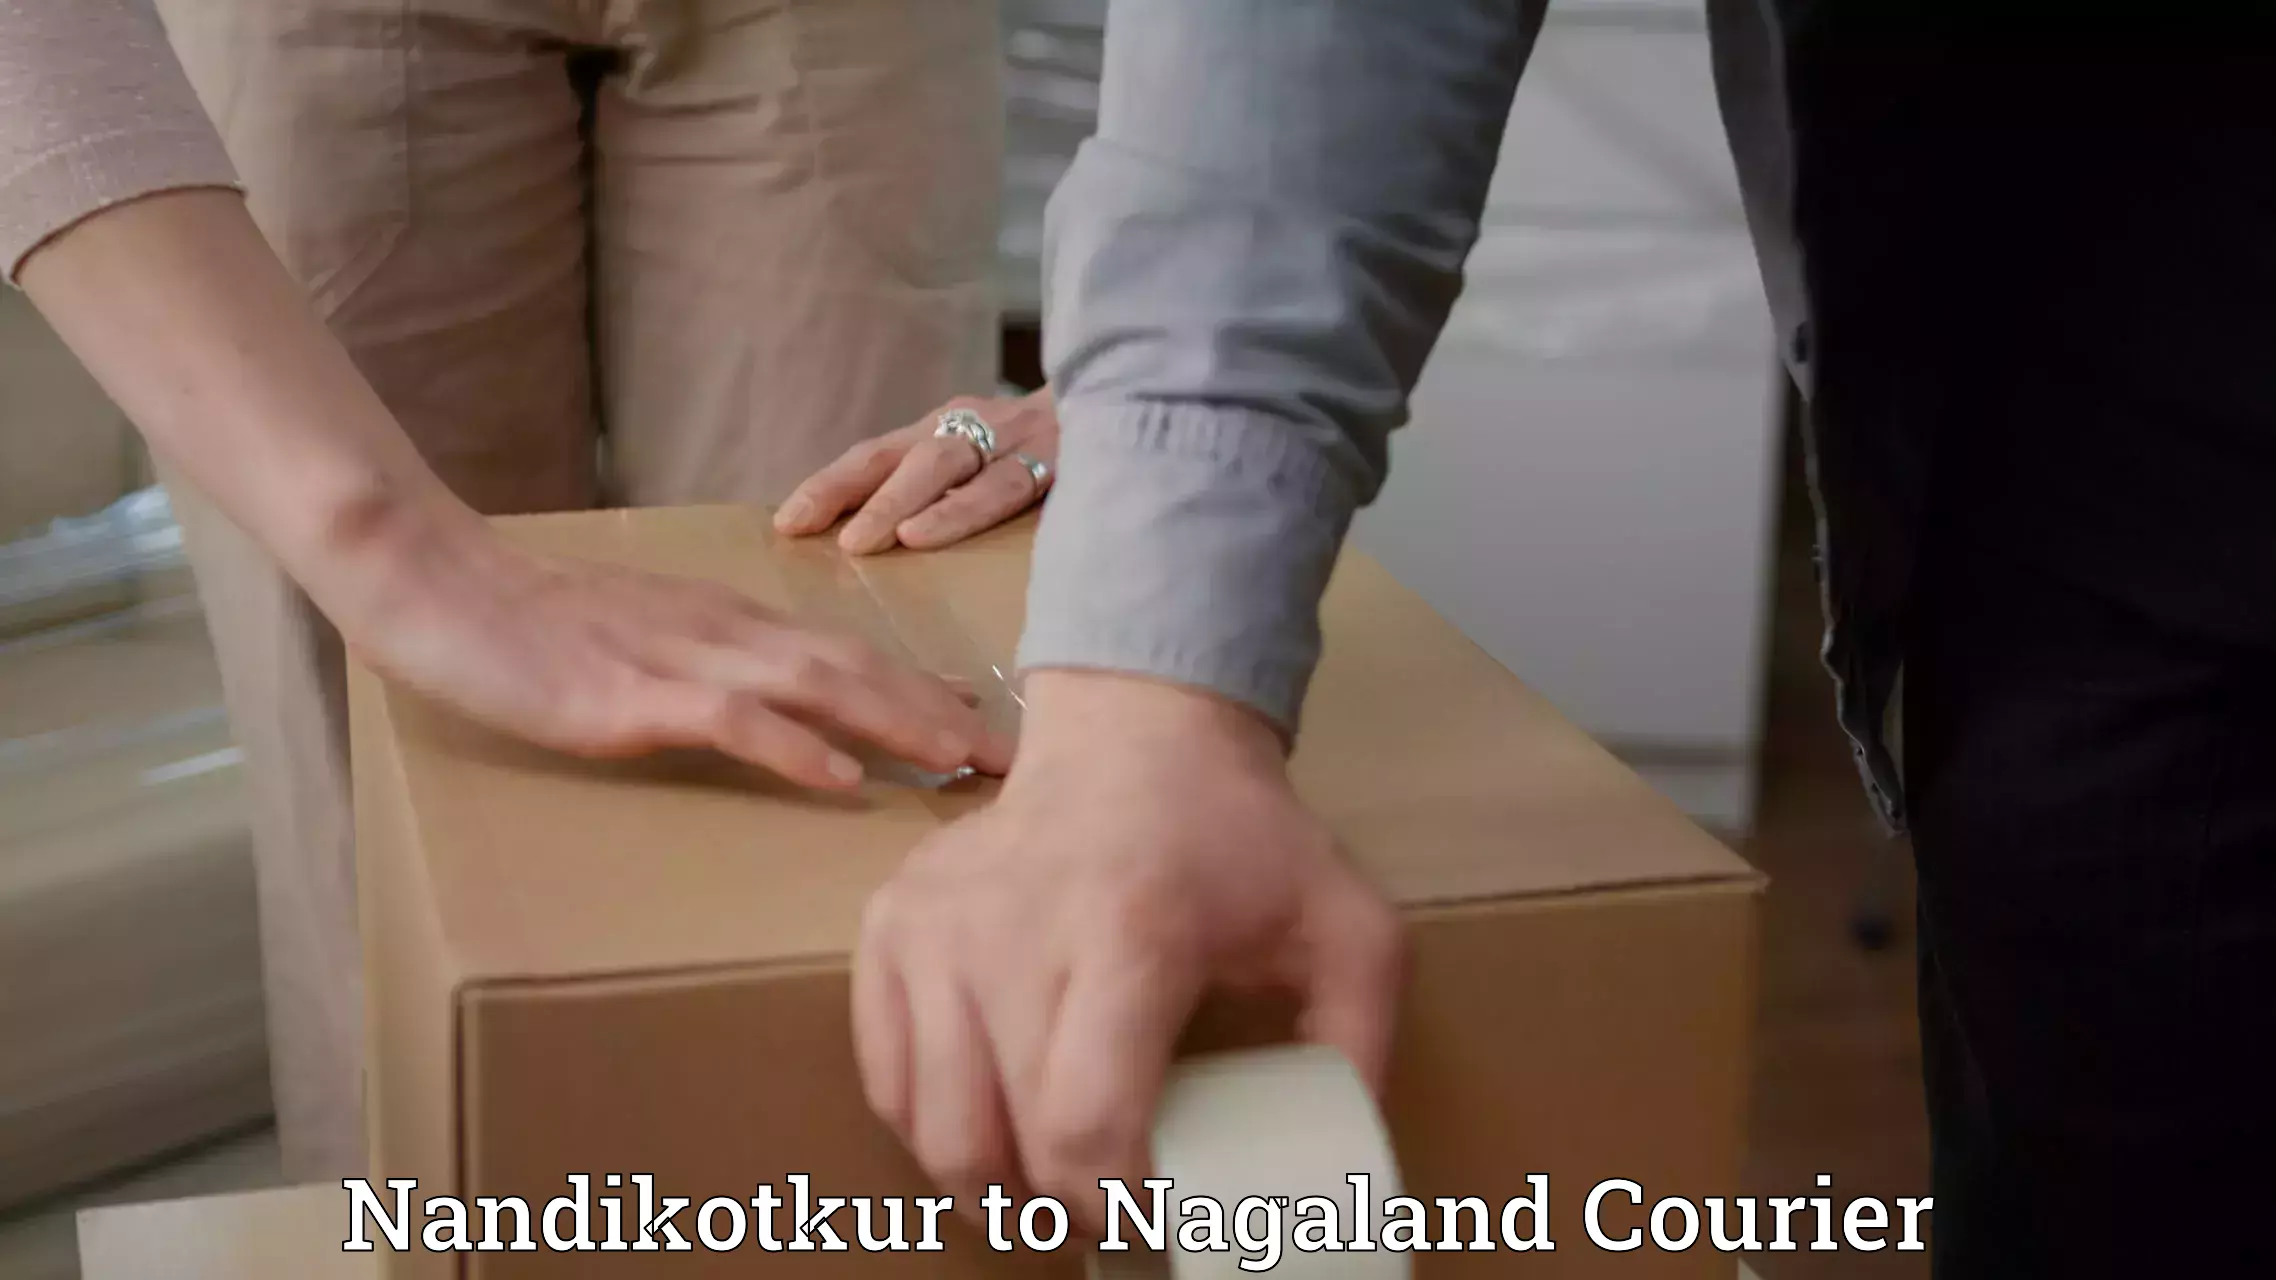 Professional courier handling Nandikotkur to Mon